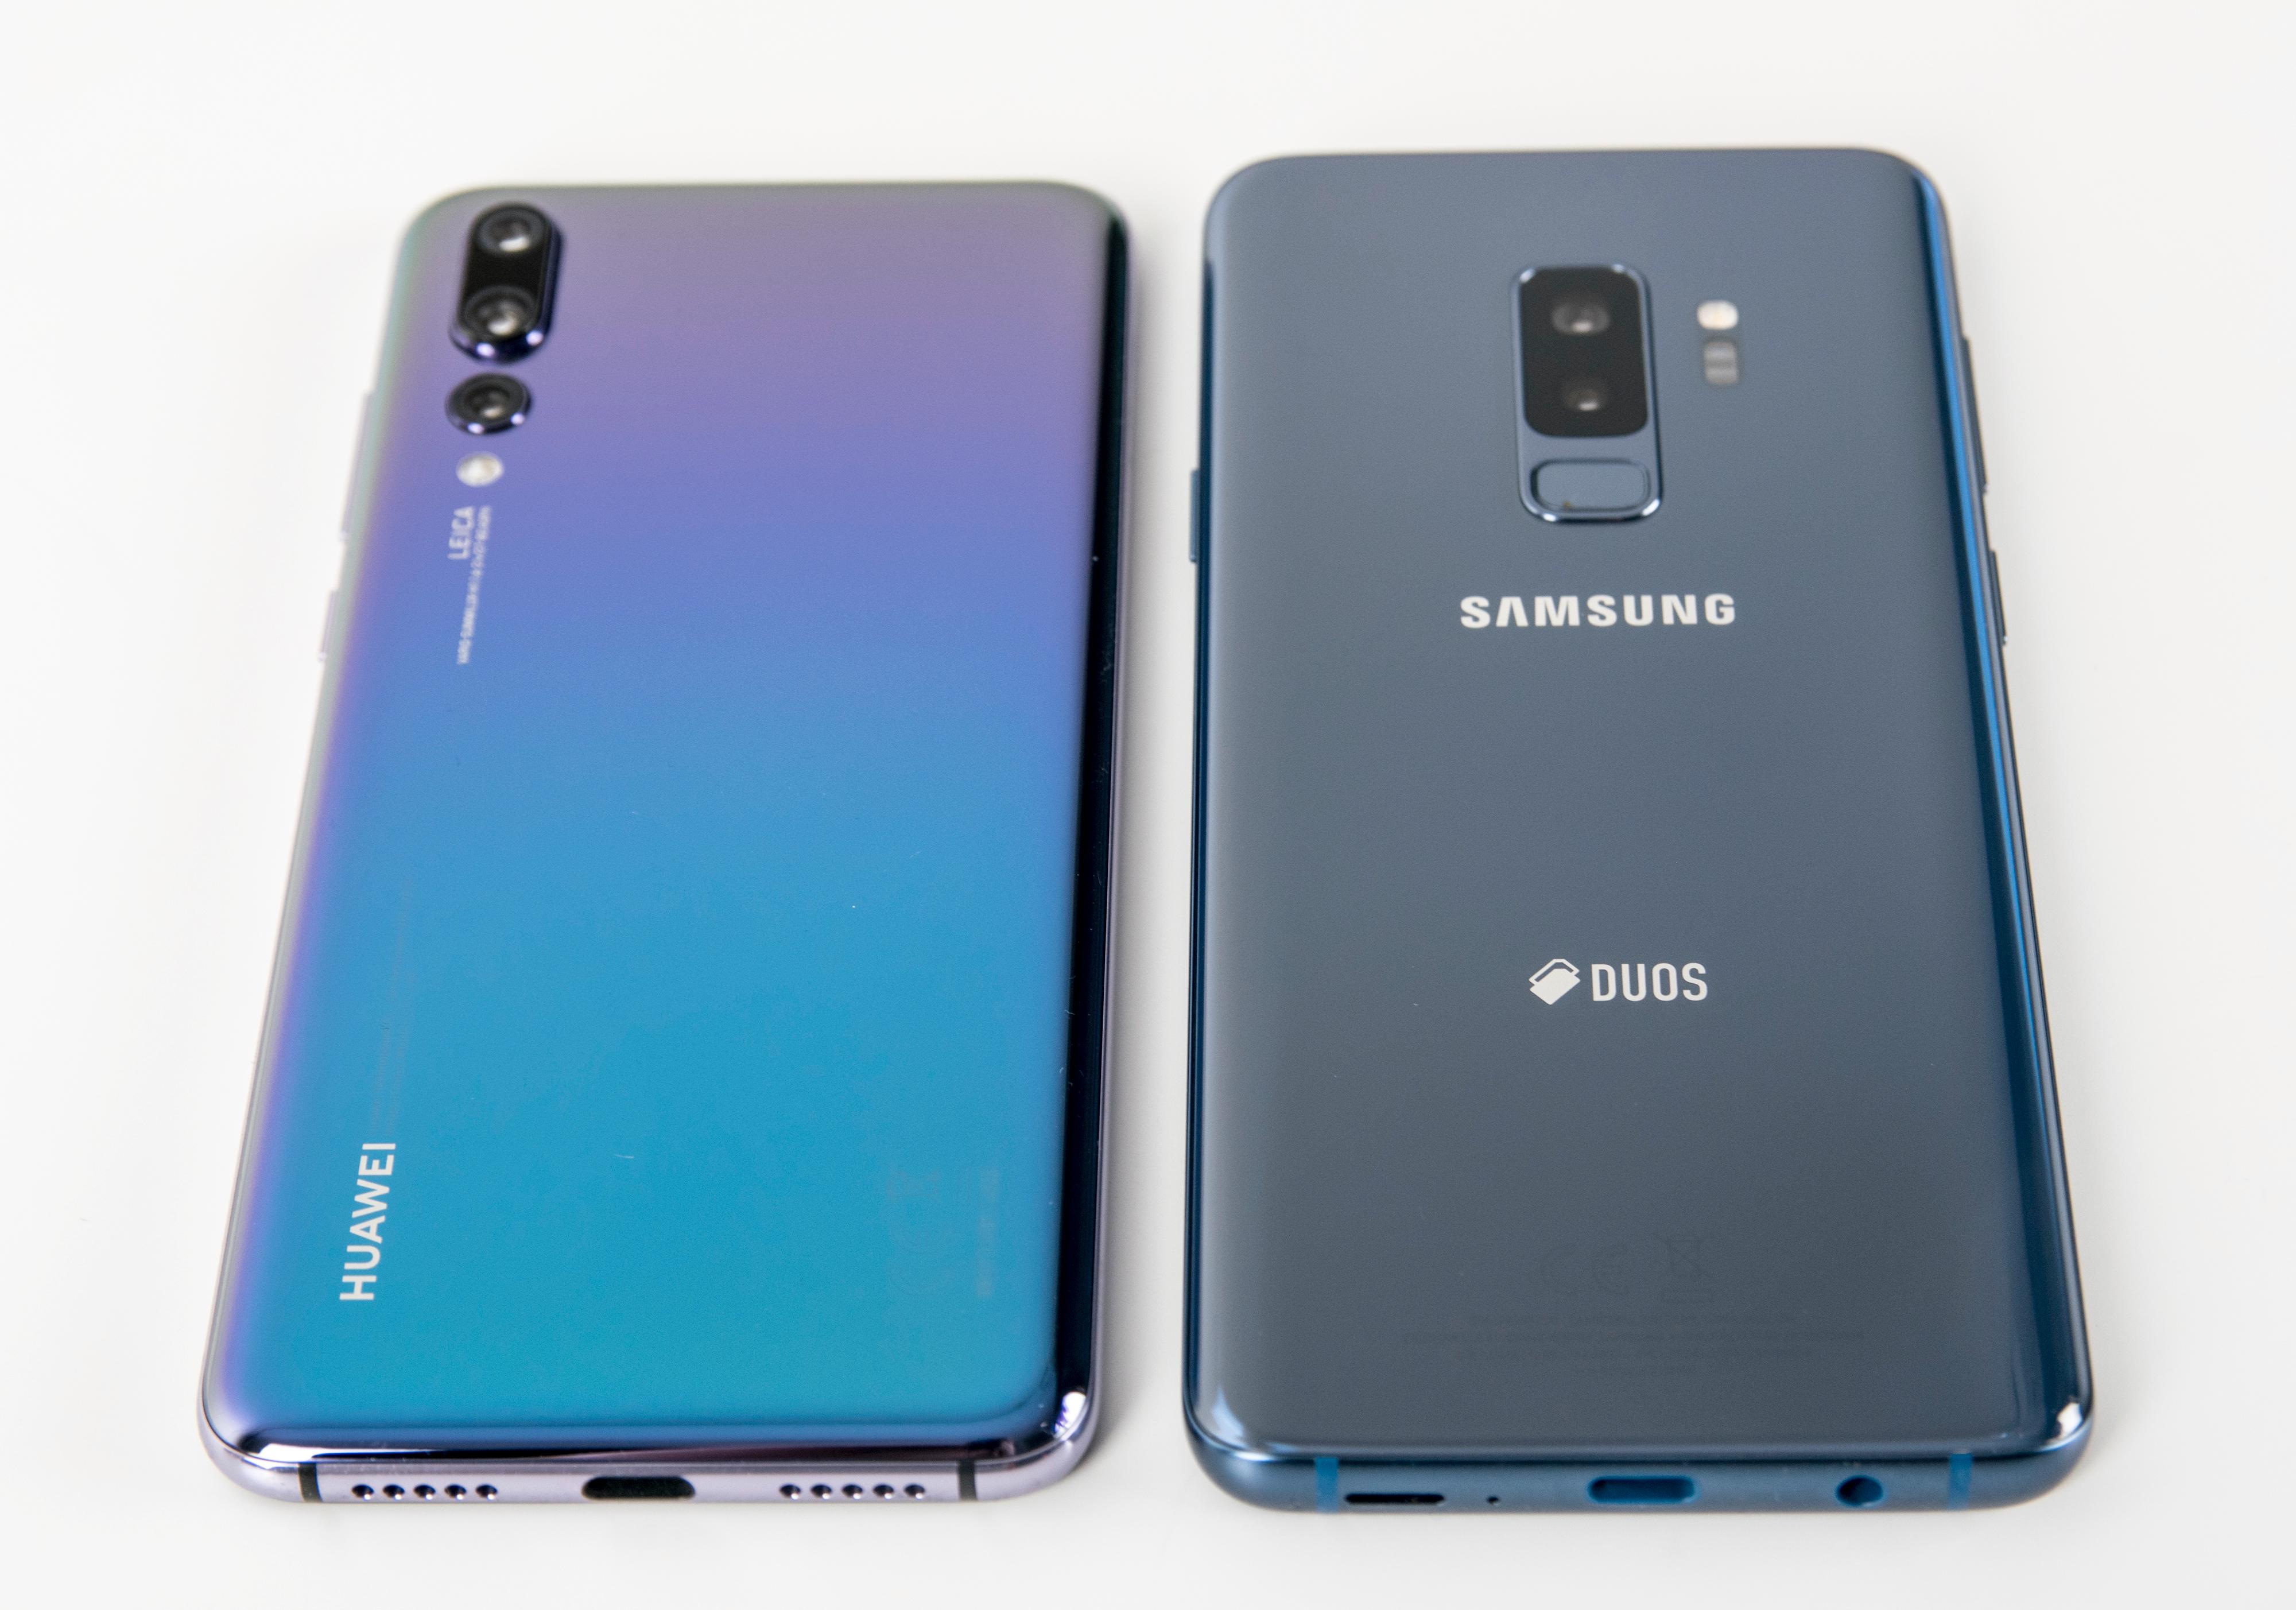 Galaxy S9+ har dobbelt kamera og variabel blender. Men den koster mye, og i vanlig bruk er det ikke så lett å se forskjell på bildene fra S8- og S9-modellene. Kanskje er det med P20 Pro årets fotorevolusjon kommer?